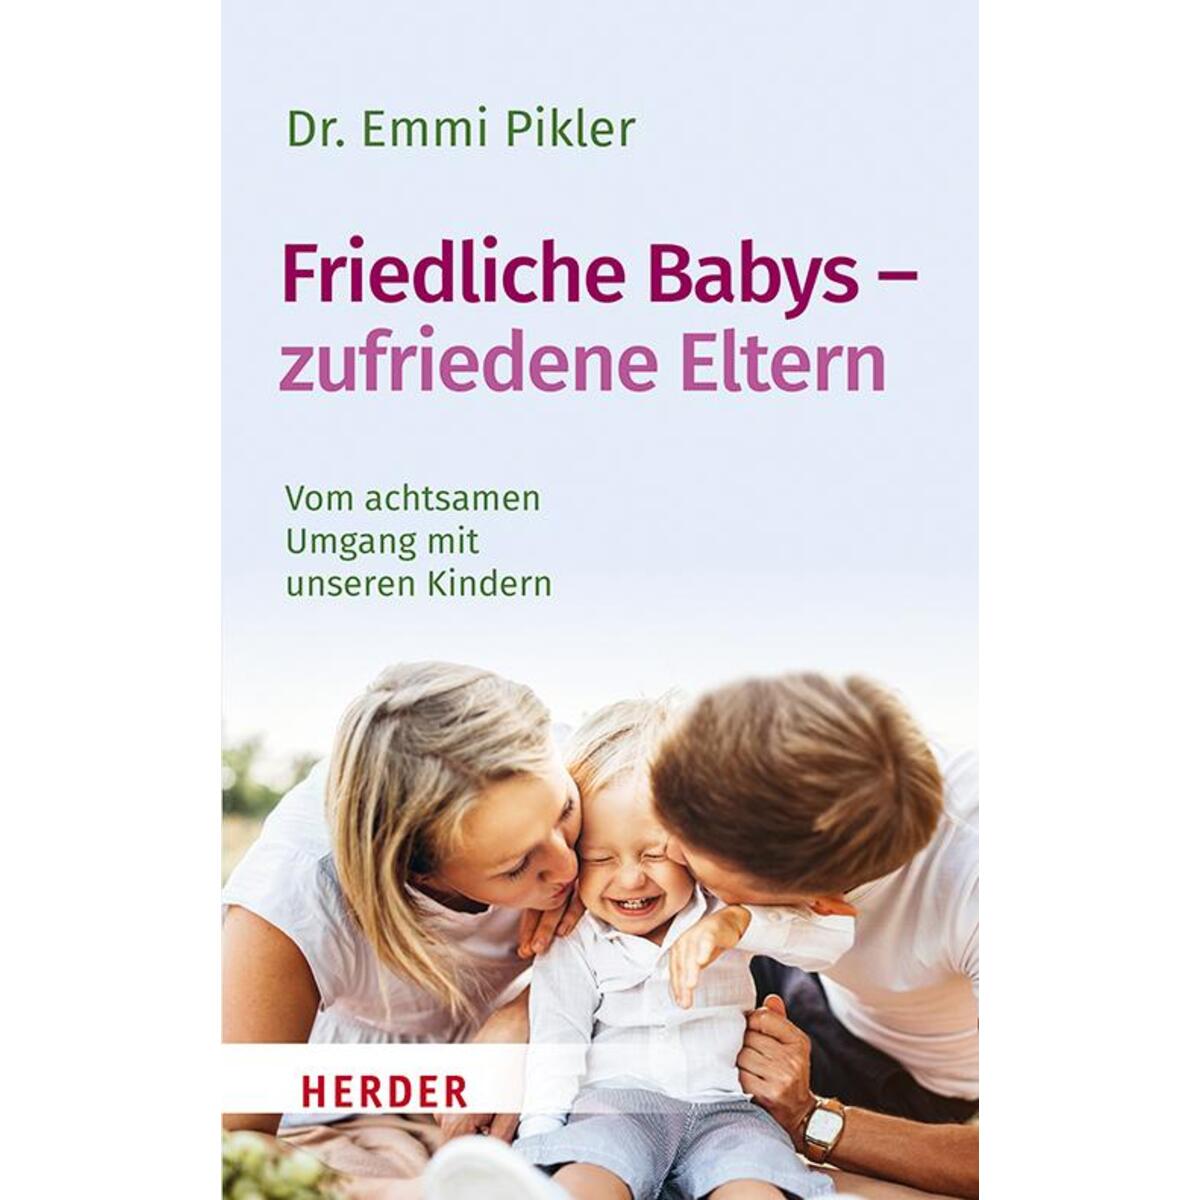 Friedliche Babys - zufriedene Eltern von Herder Verlag GmbH